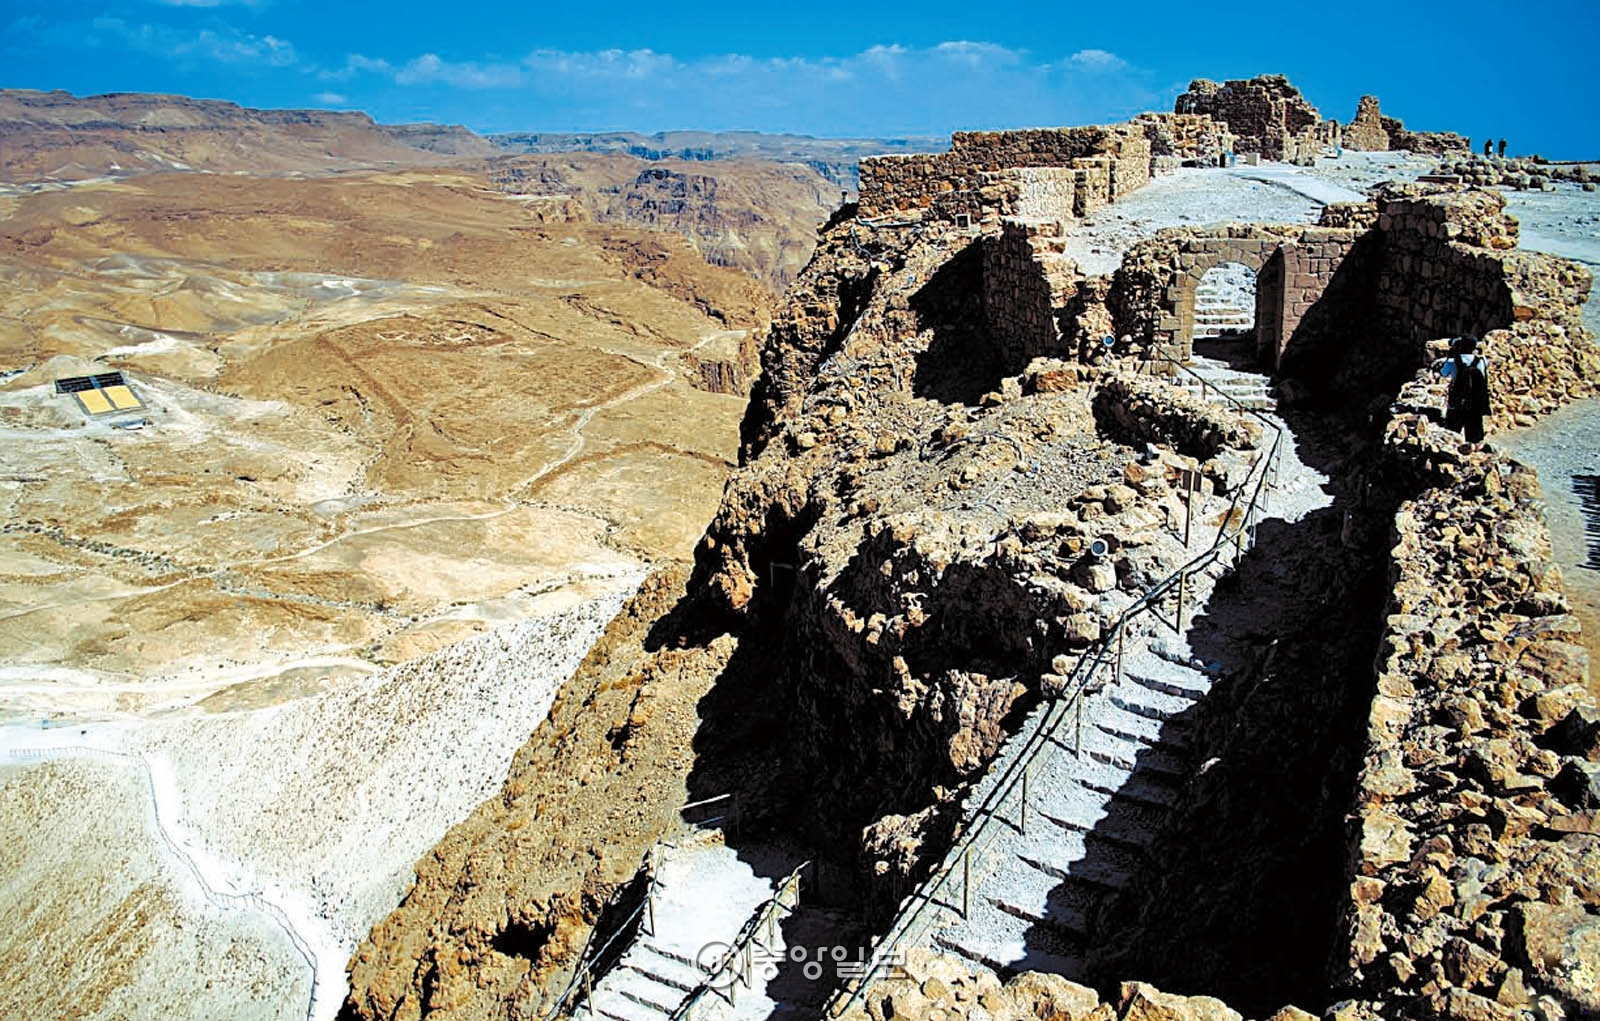 마사다의 절벽에 놓인 가파른 계단. 그 뒤로 로마군이 쌓은 경사로와 그들의 옛 막사터가 보인다.